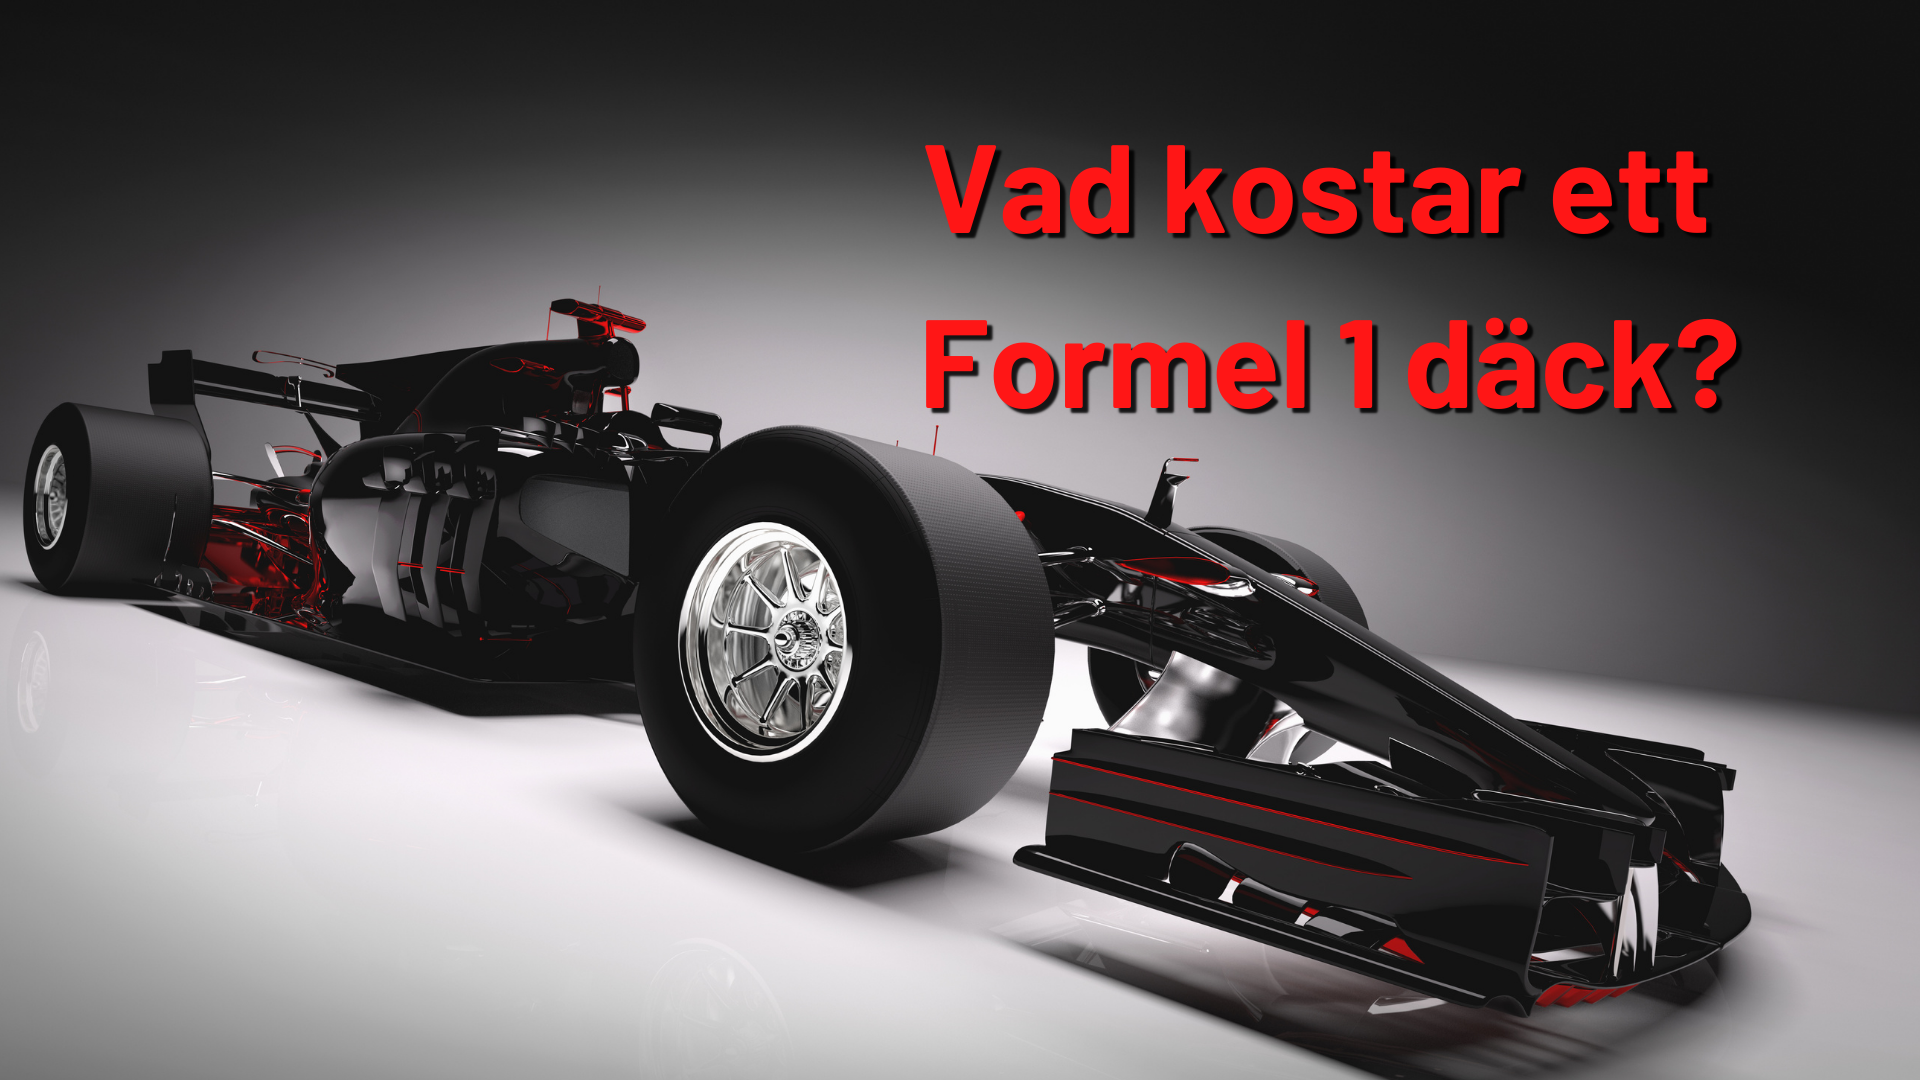 Vad kostar ett Formel 1 däck?